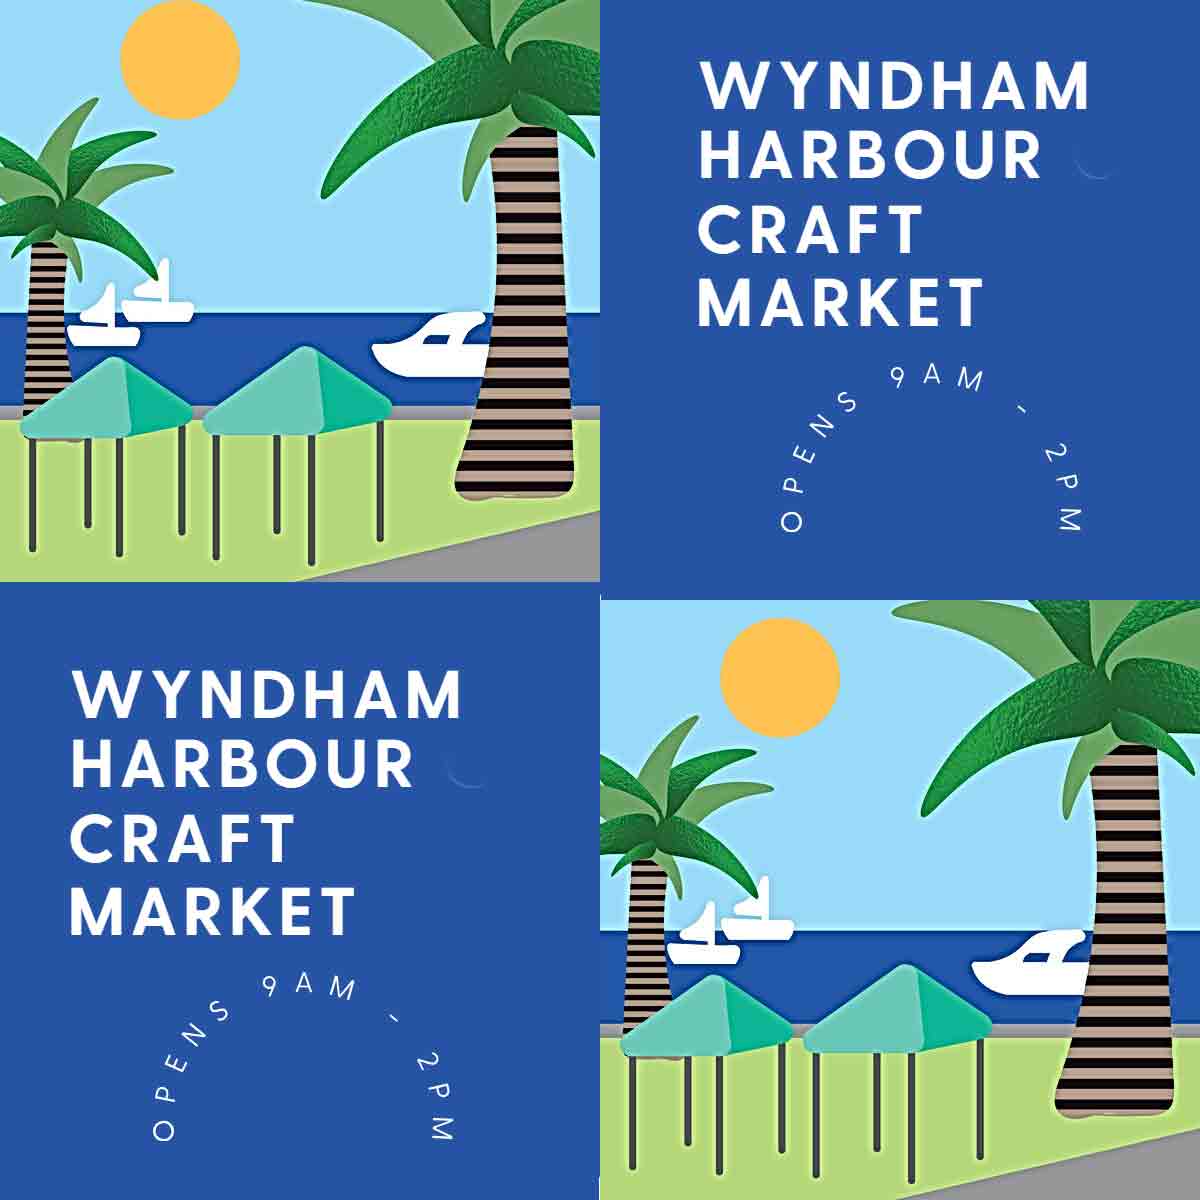 Wyndham Harbour Craft Market